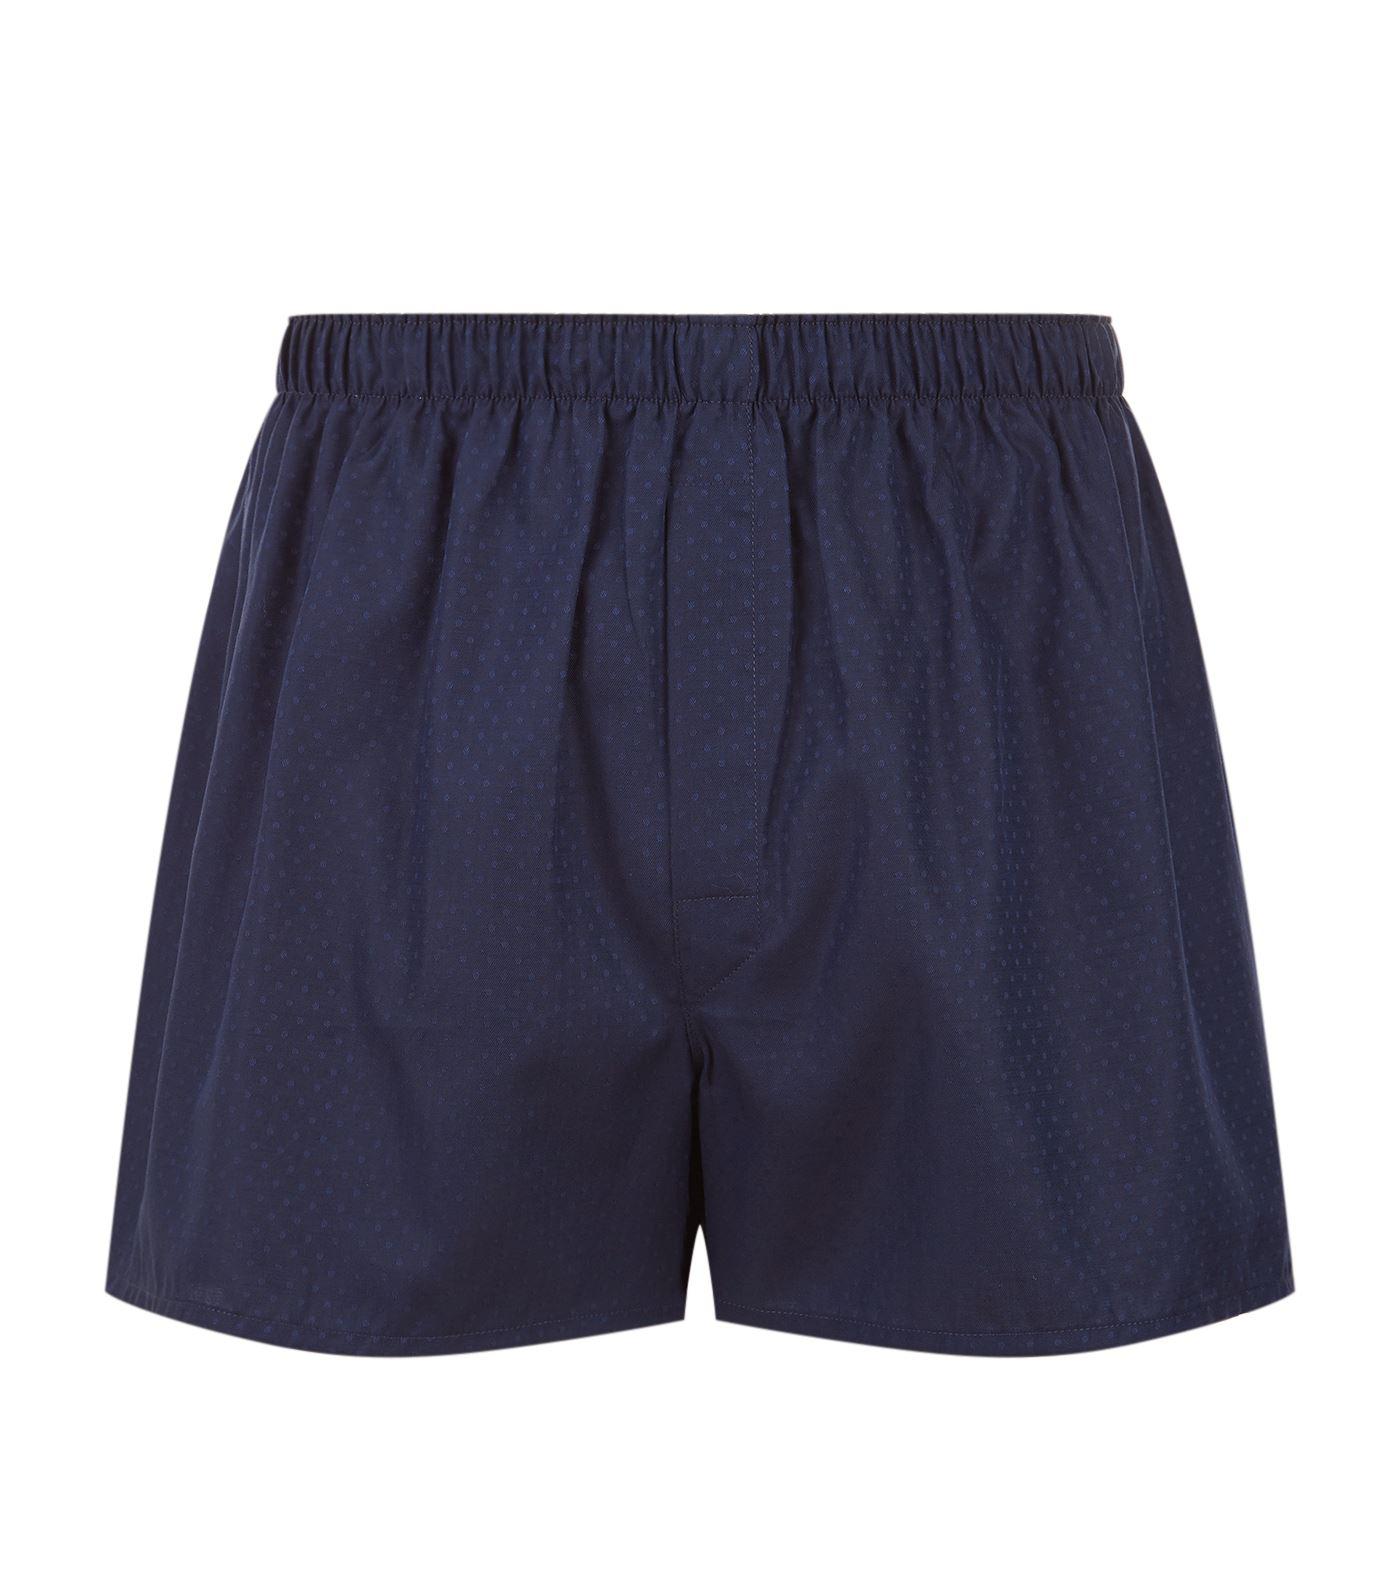 Lyst - Sunspel Cotton Polka-dot Boxer Shorts in Blue for Men